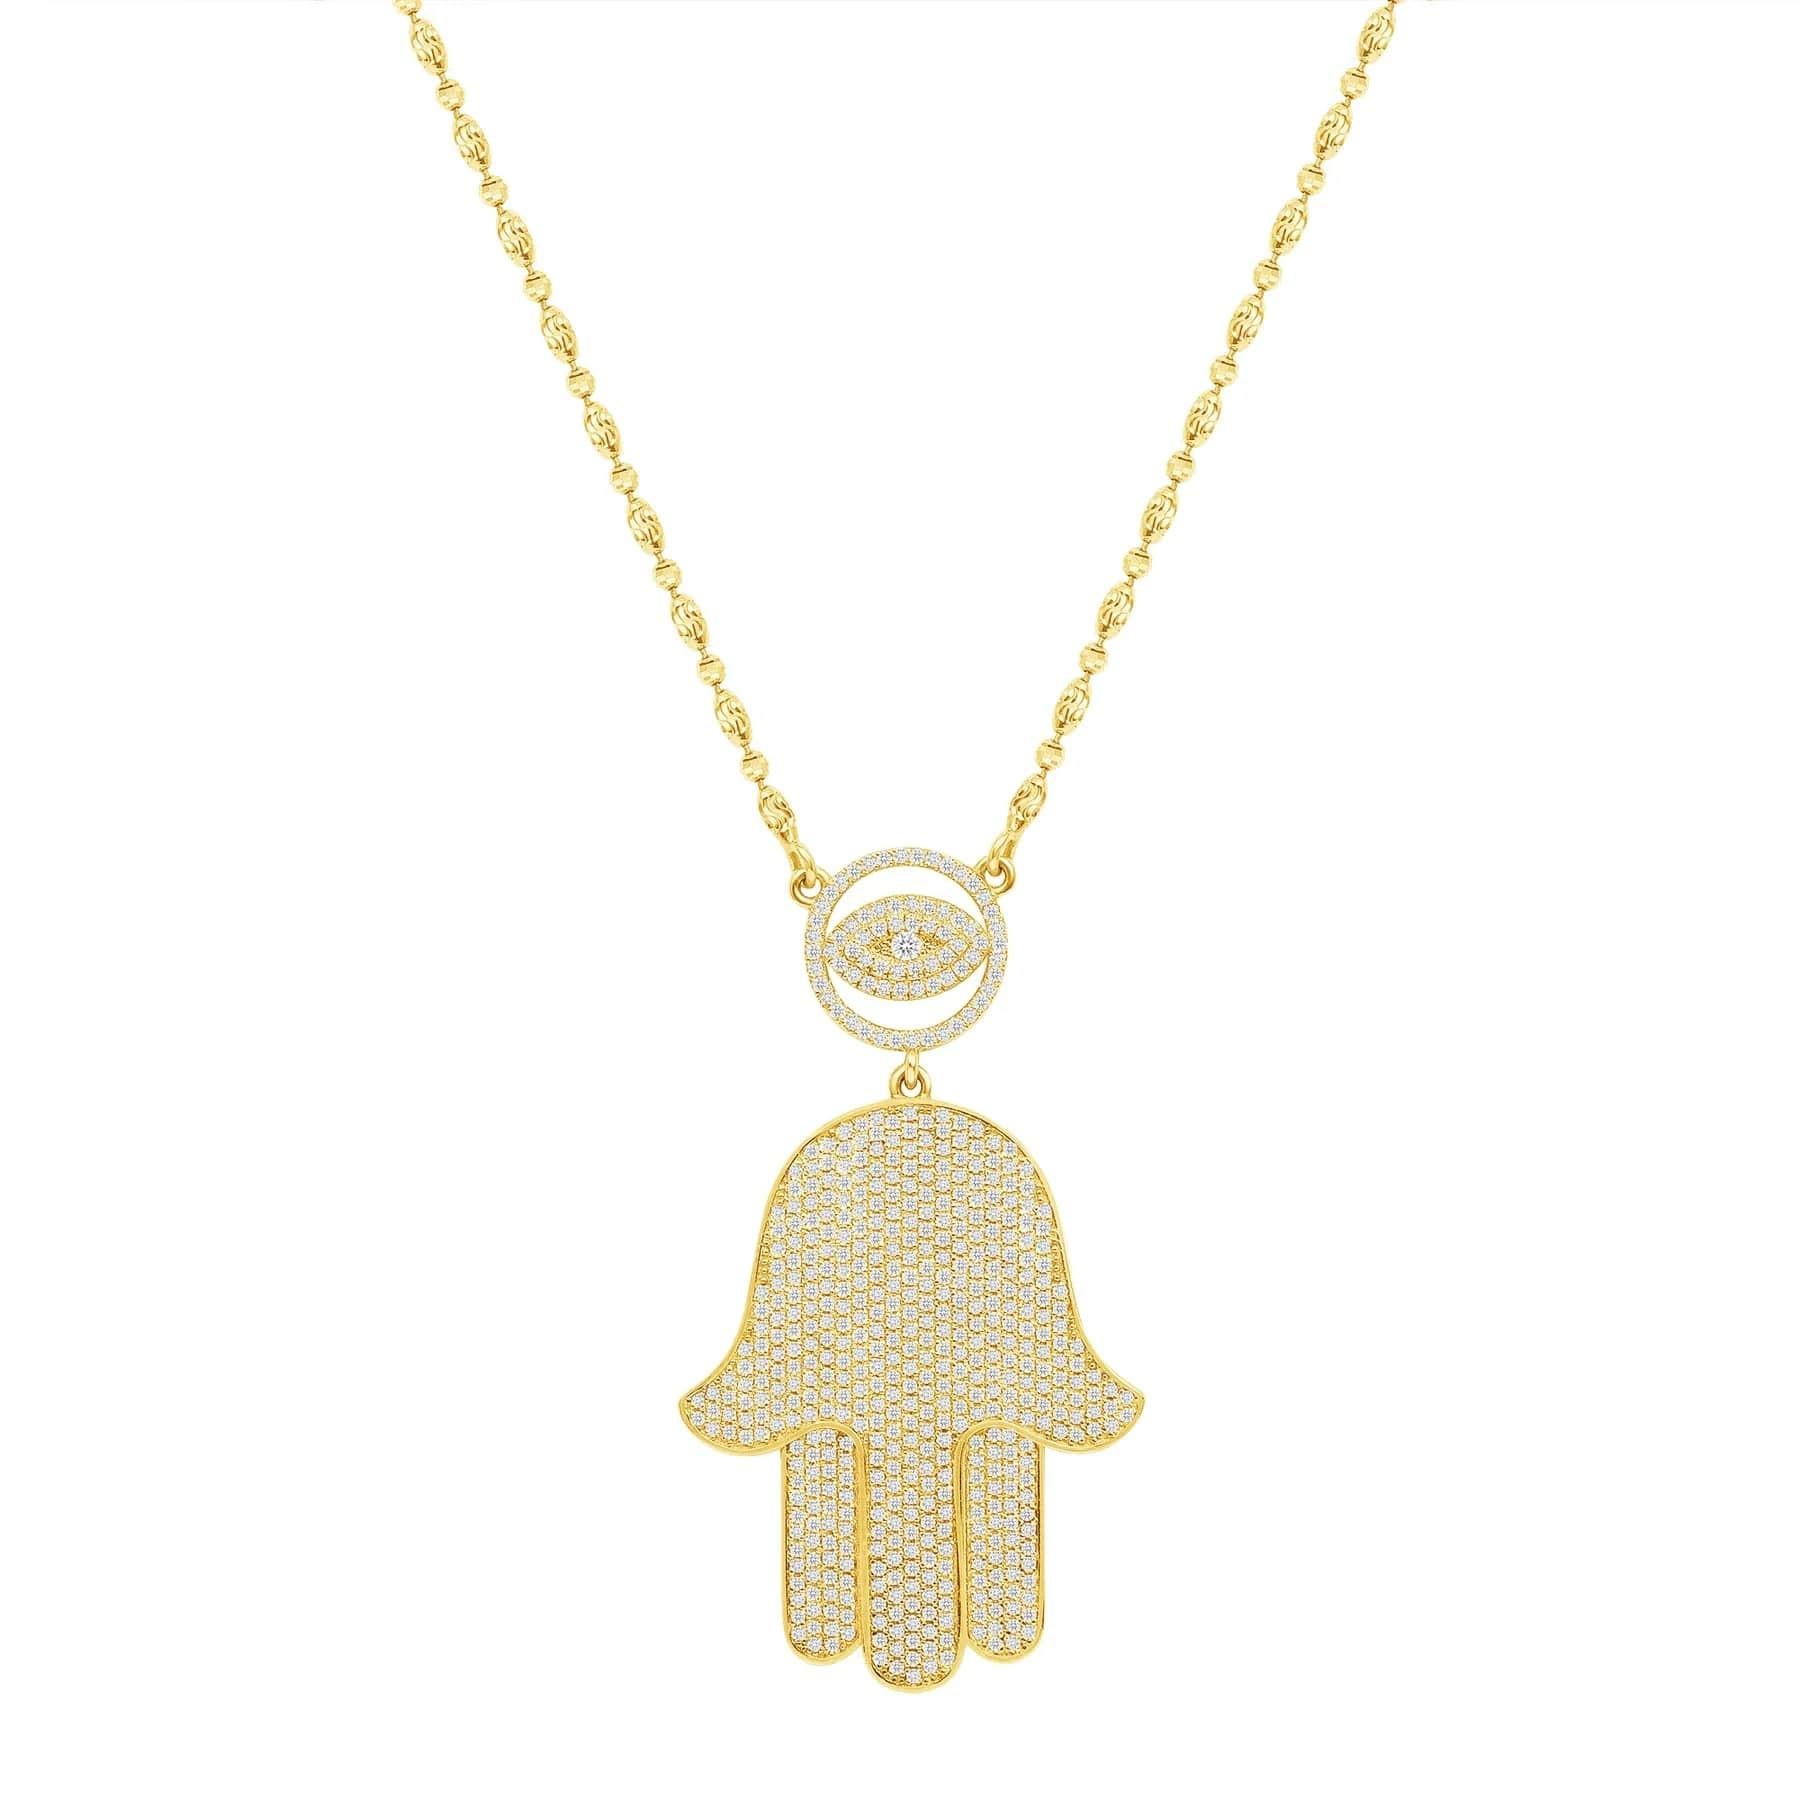 Diese Hamsa Eye Diamond Necklace bietet sowohl einen spirituellen als auch einen modischen Trend-Look. Ein perfektes Geschenk für Familienmitglieder und Freunde.

Informationen zur Halskette
Metall : 14k Gold
Diamantschliff : Rund
Diamant Karat